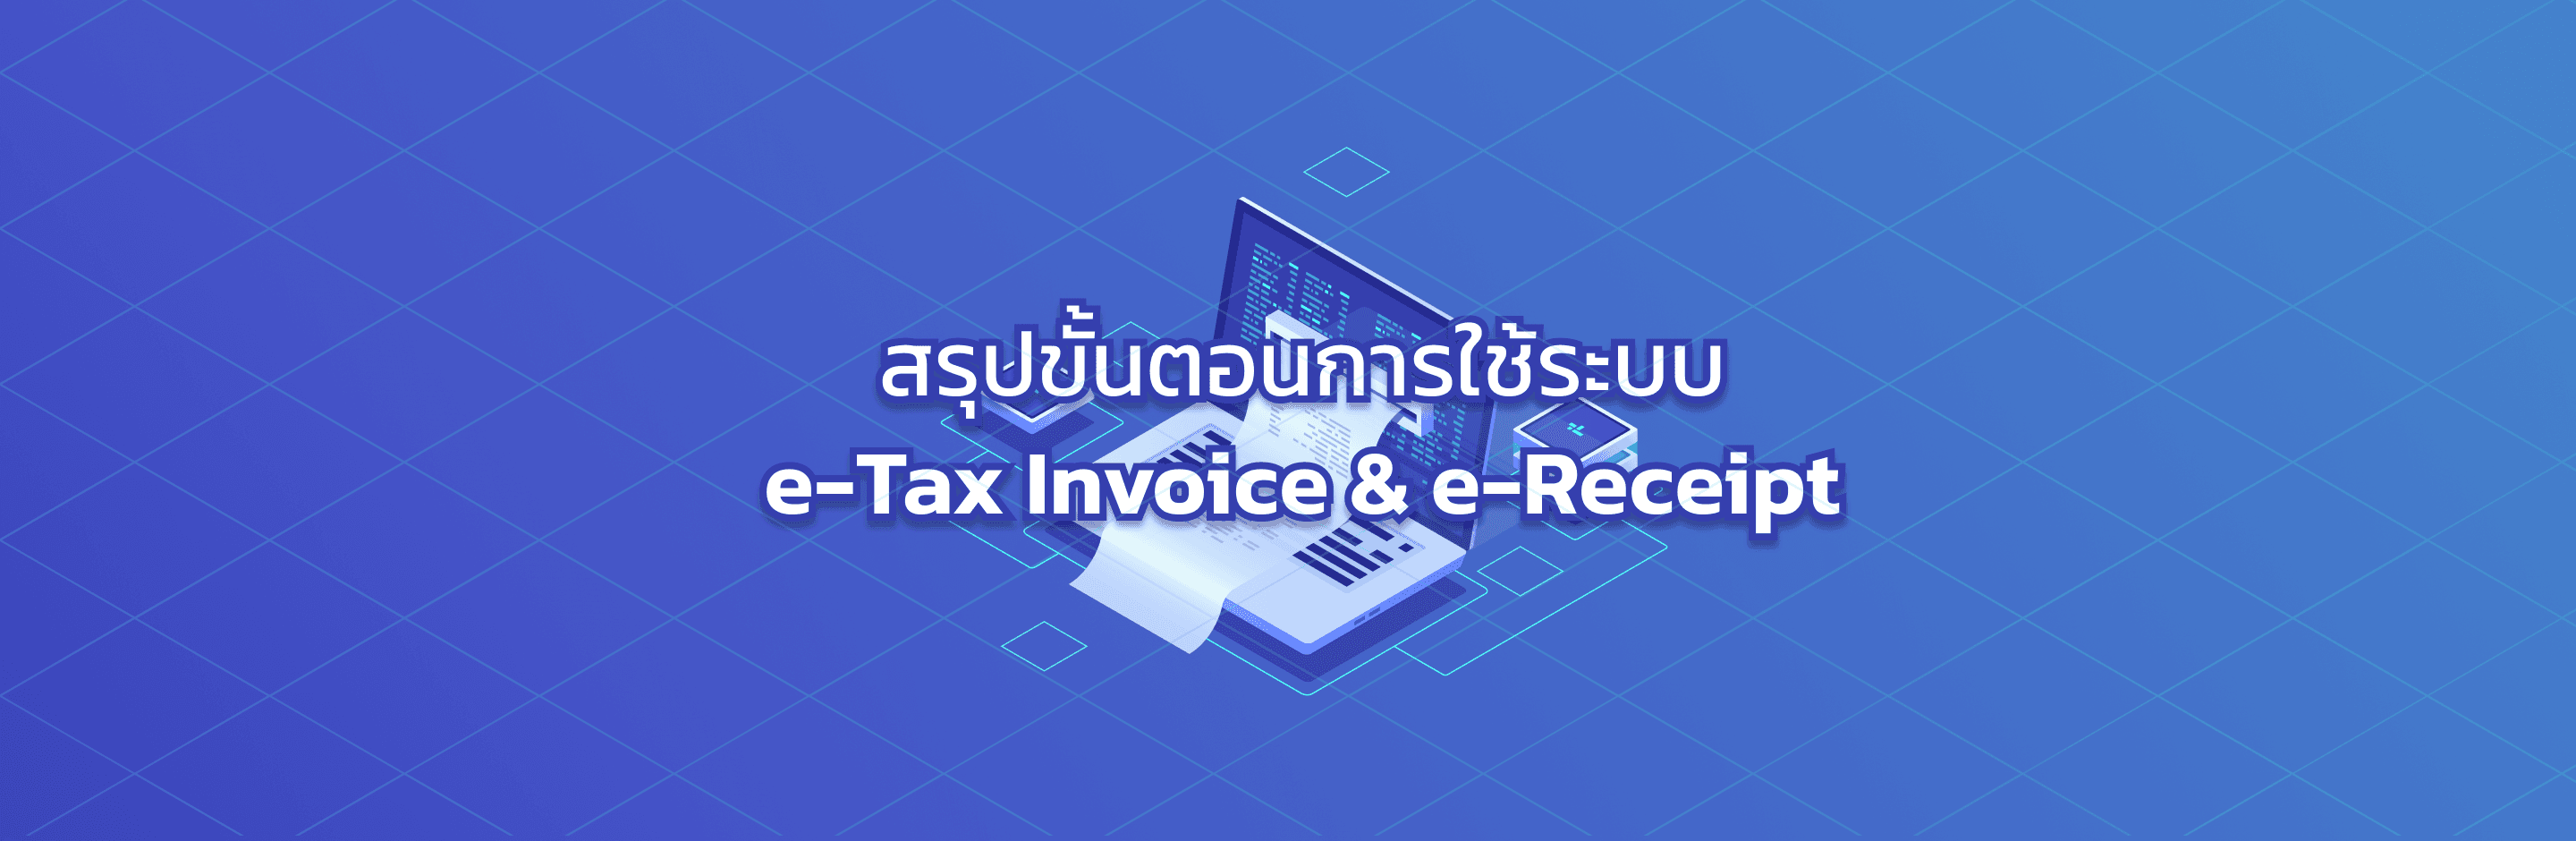  ขั้นตอนการจัดทำใบกำกับภาษีอิเล็กทรอนิกส์ผ่านระบบ e-Tax Invoice & e-Receipt  